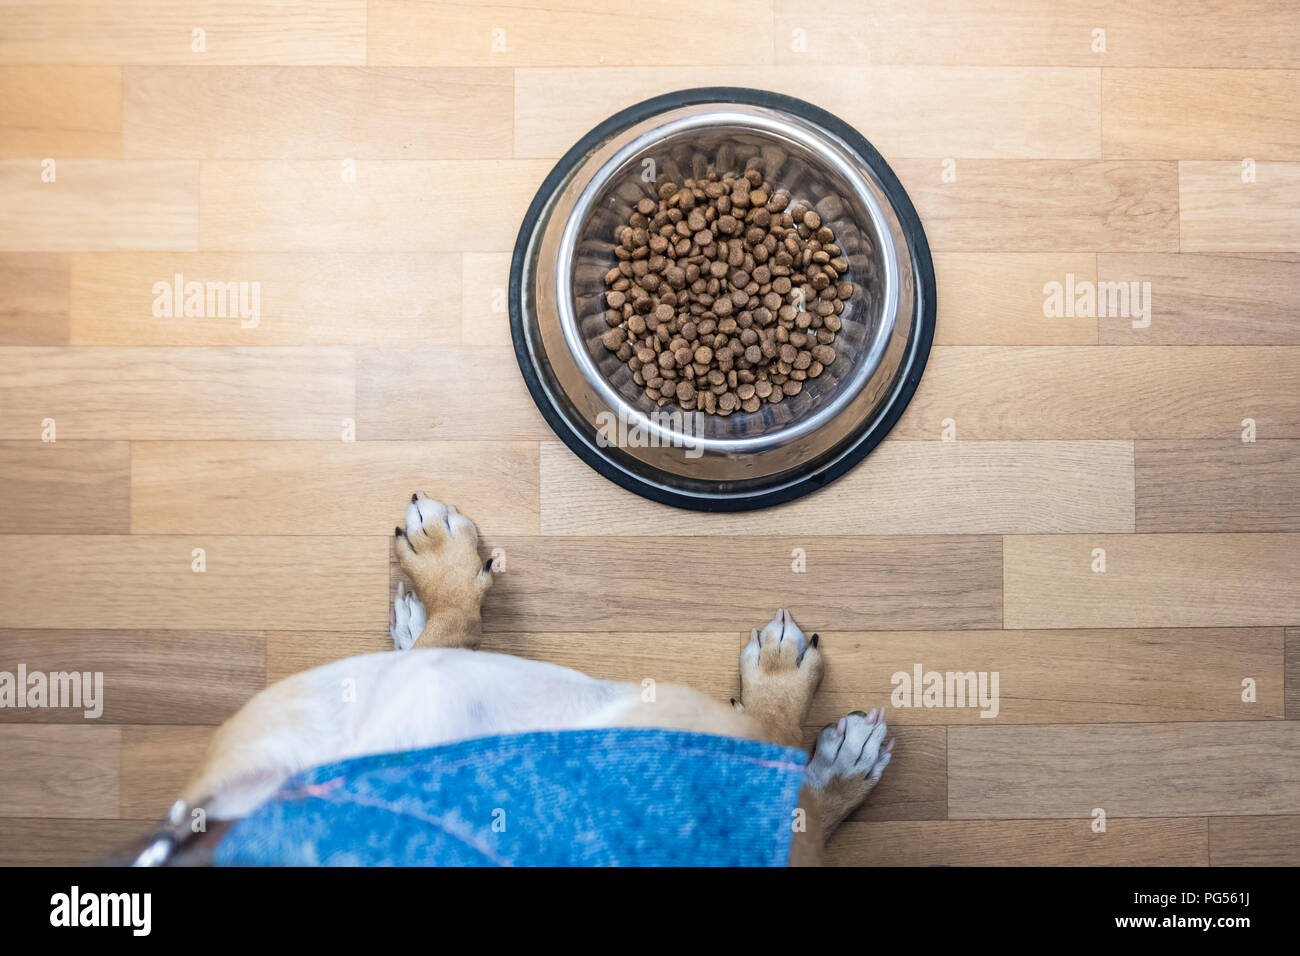 Vista superiore del cane pronto a mangiare il cibo dalla ciotola. Il punto di vista di un cucciolo seduto di fronte a una ciotola con il cibo in ambienti chiusi. Foto Stock